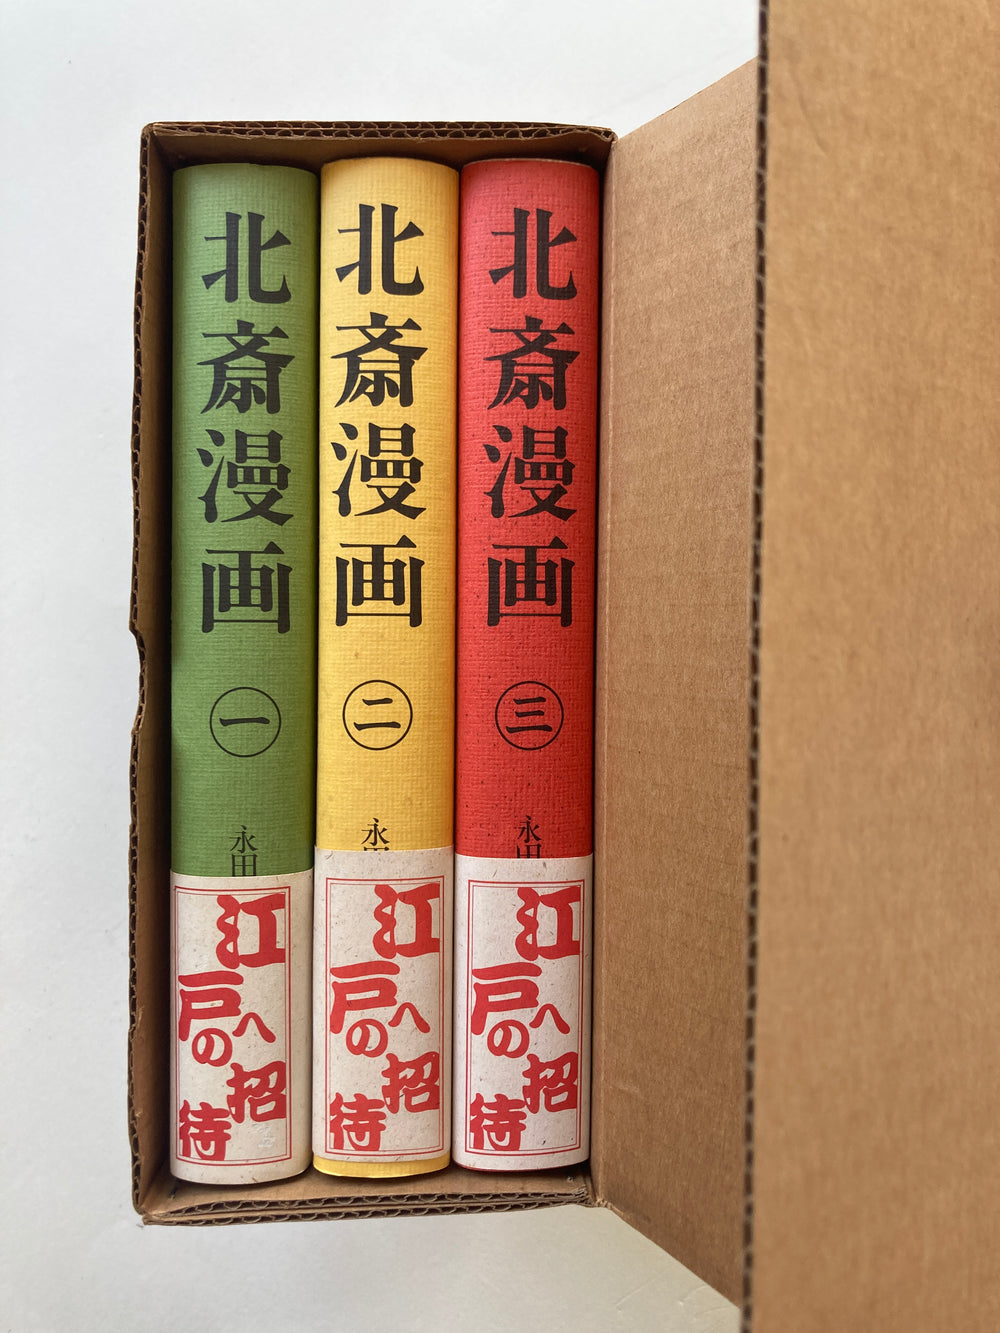 HOKUSAI SKETCH BOOK I, II,III - Full Set with Box